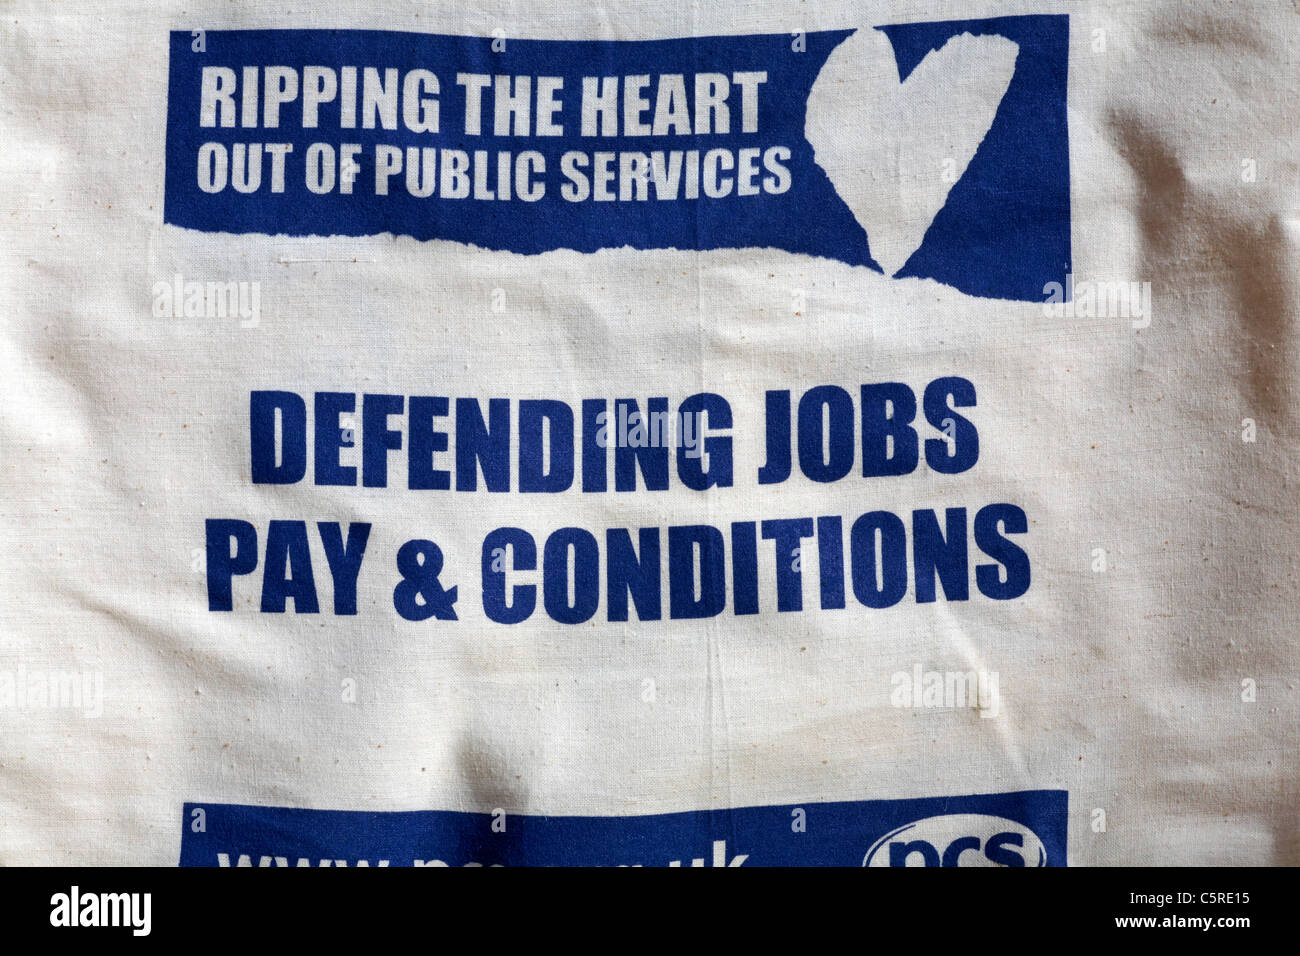 Close up di dettaglio sulla borsa di tela - strappa il cuore dei servizi pubblici - difesa lavori pagano & condizioni Foto Stock